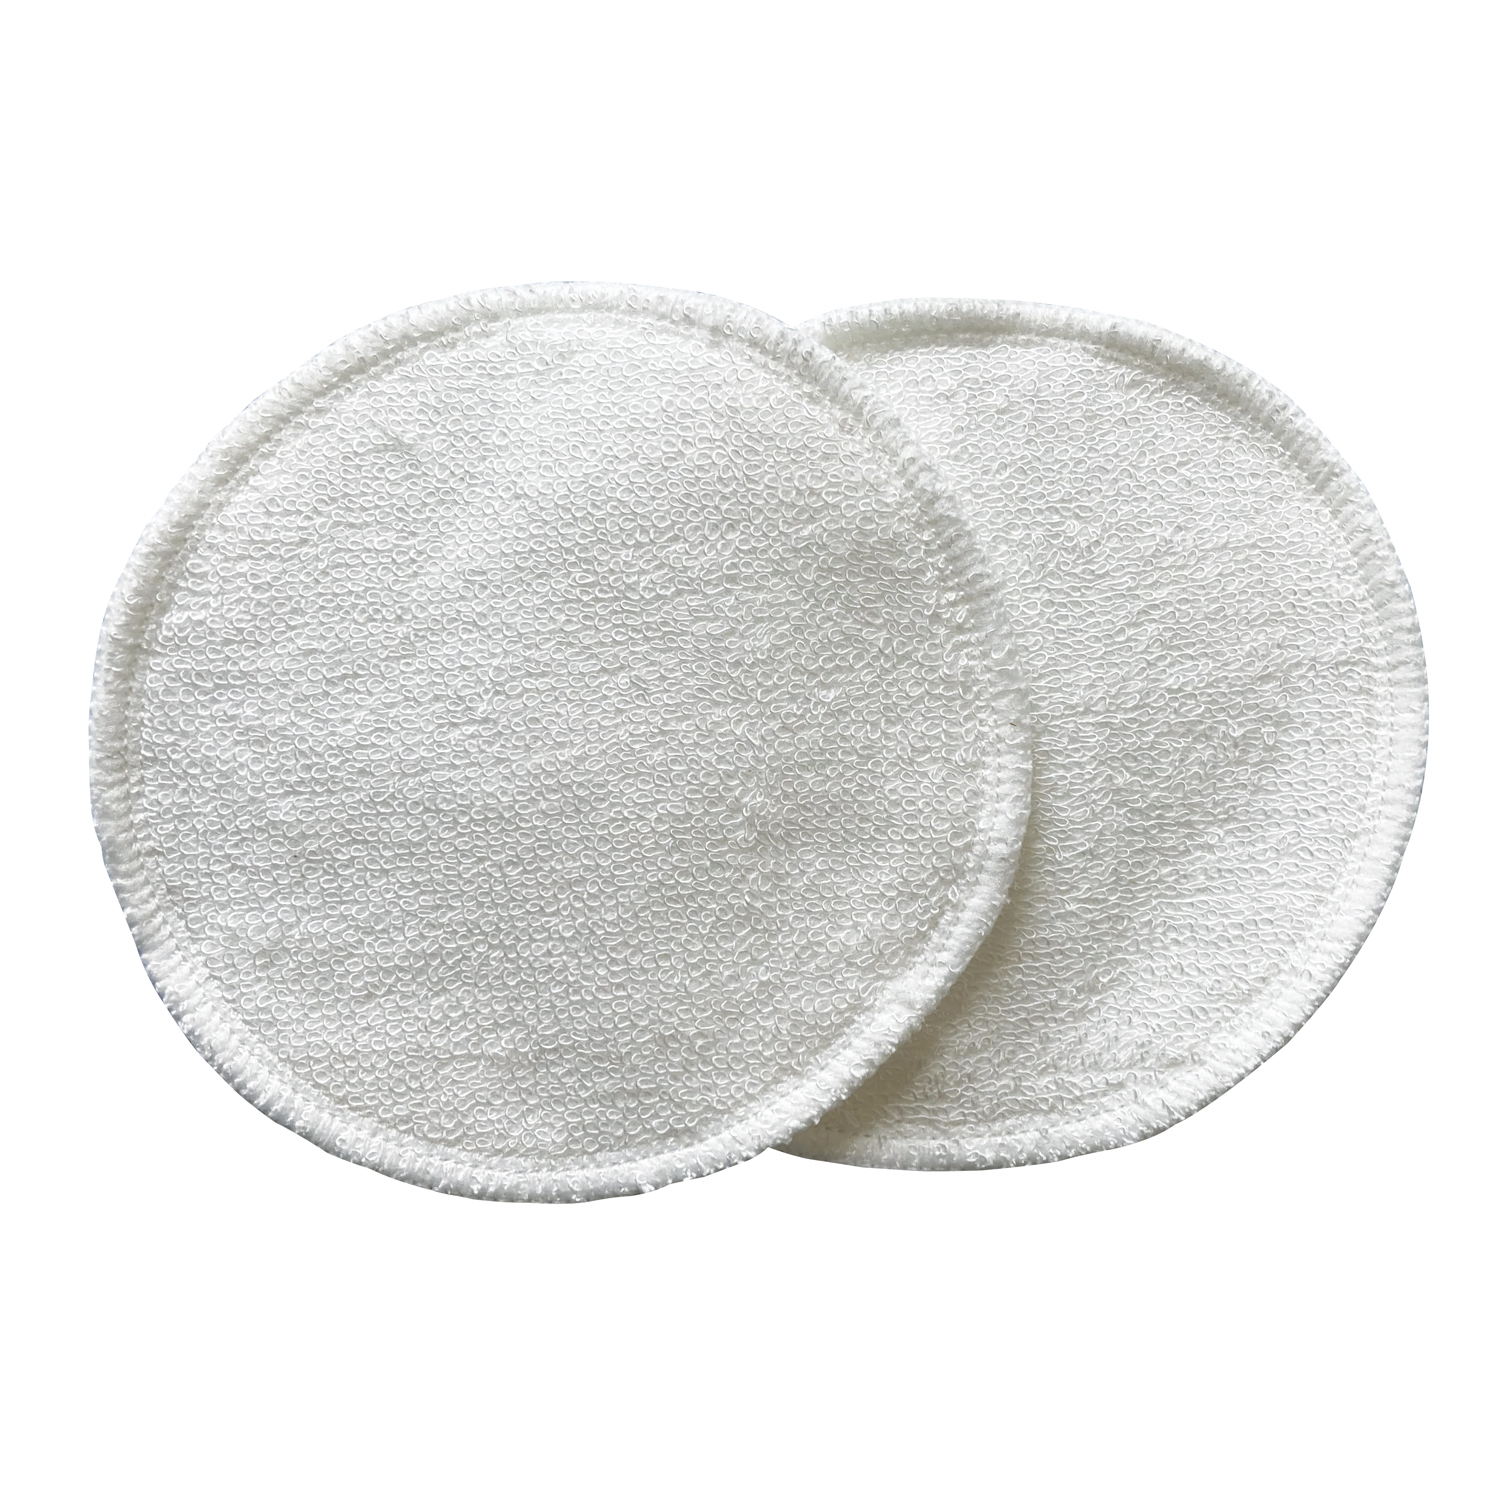 Coussinets d'allaitement lavables en coton bio et polyester impermeable  (lot de 2) - NILD OR